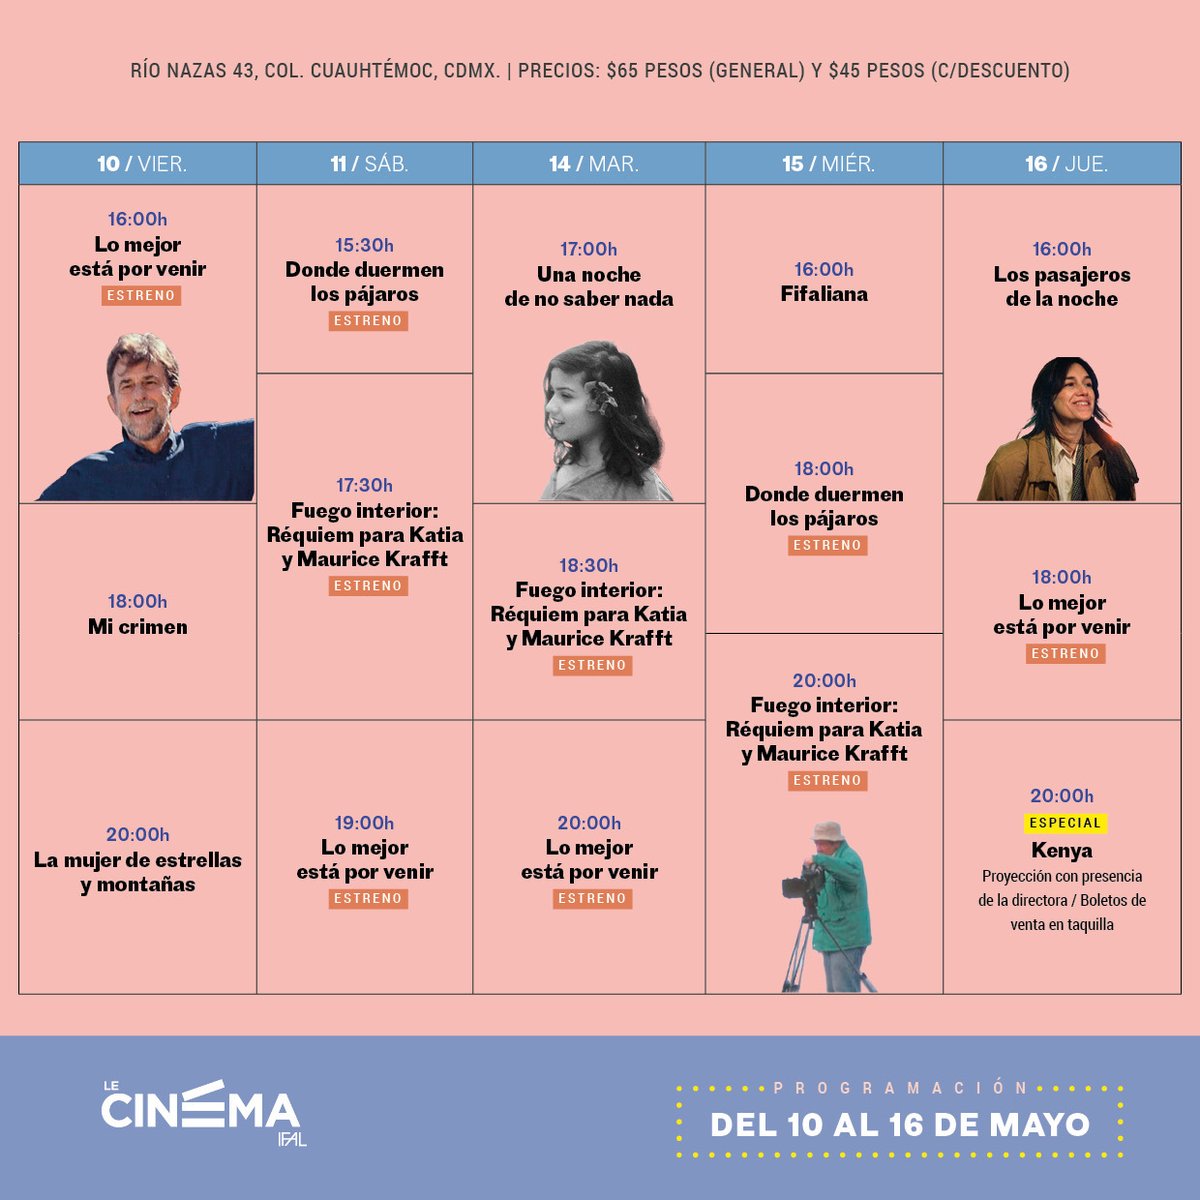 🍿Cine l ¿Te gusta el cine francés?

Te compartimos la cartelera de @_lecinema del viernes 10 al jueves 16 de mayo.

🎞 Info swll.to/n75aBBL
🎟Boletos de venta en taquilla
🗣Todas las películas tienen subtítulos en español
📍Río Nazas 43, Col. Cuauhtémoc